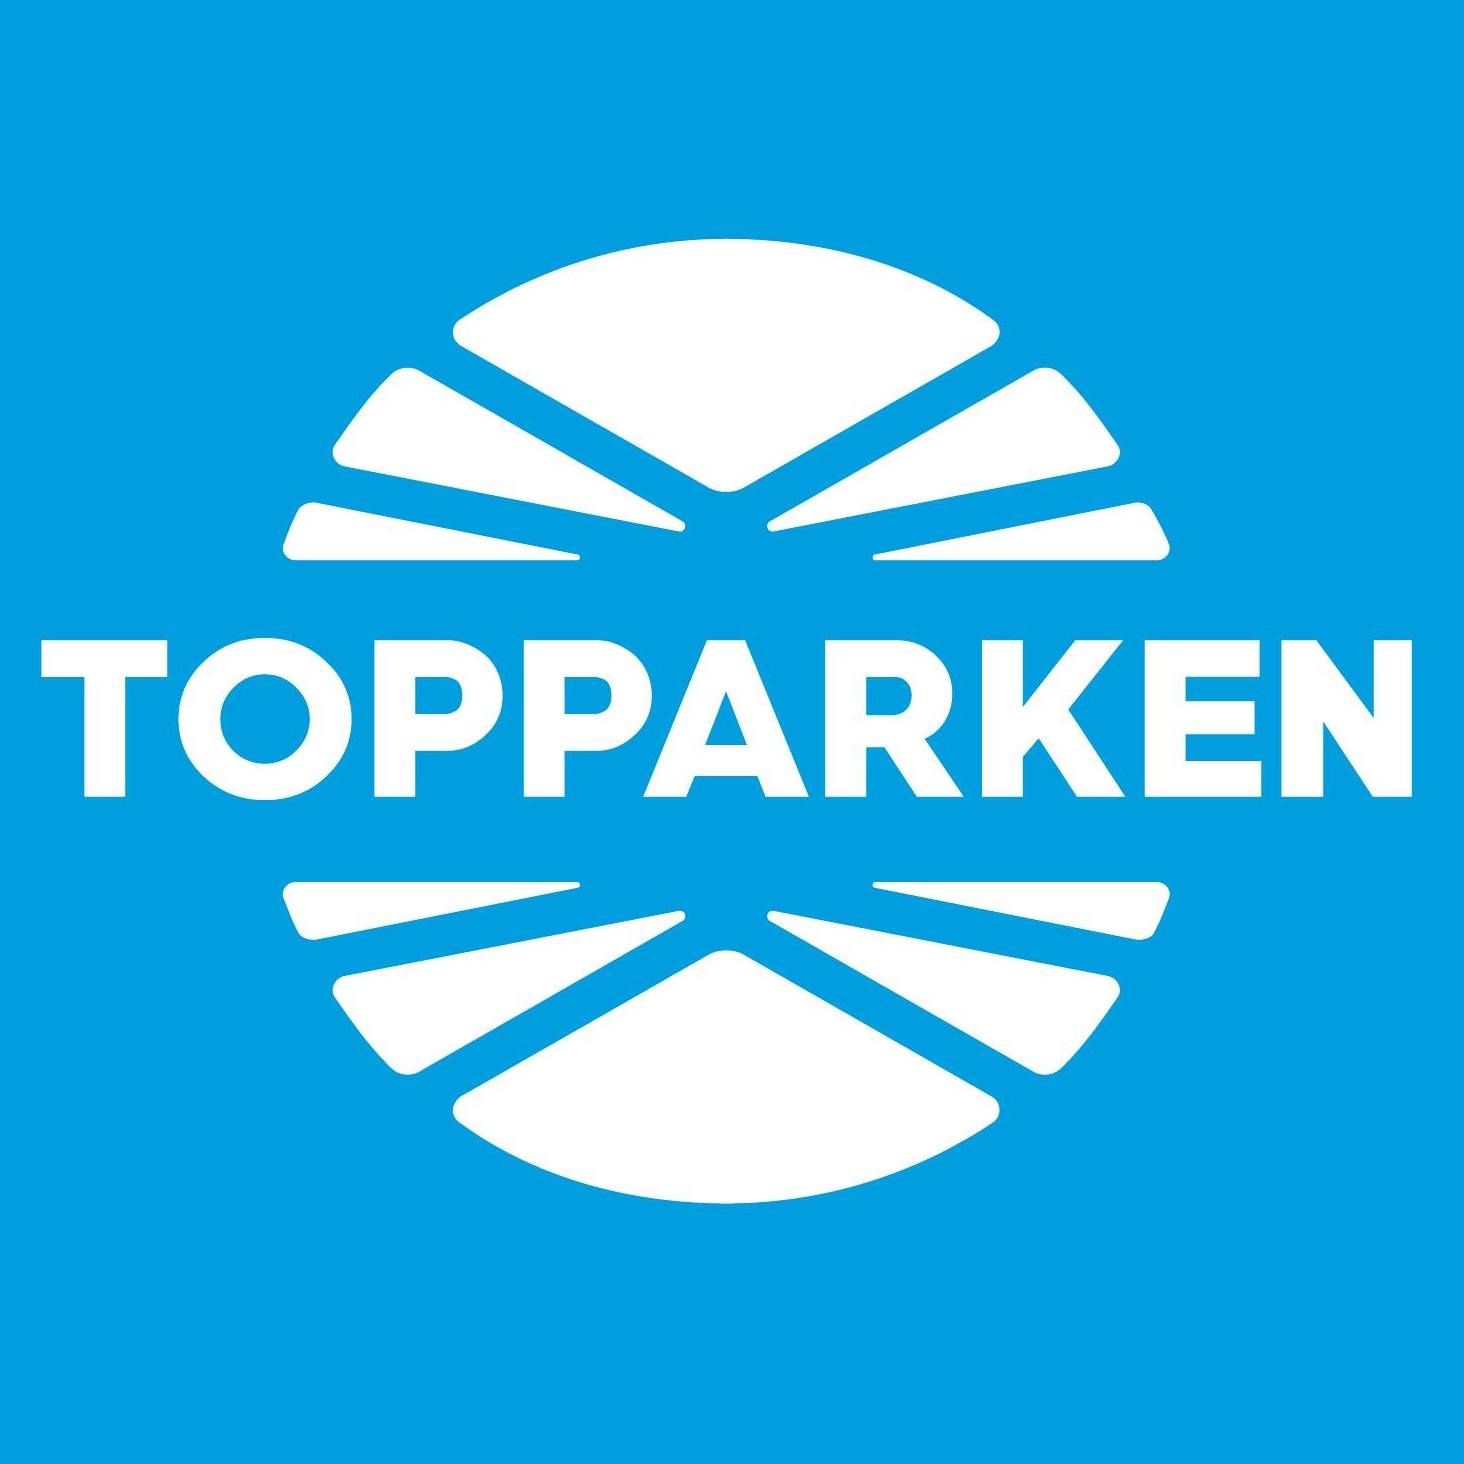 Topparken logo